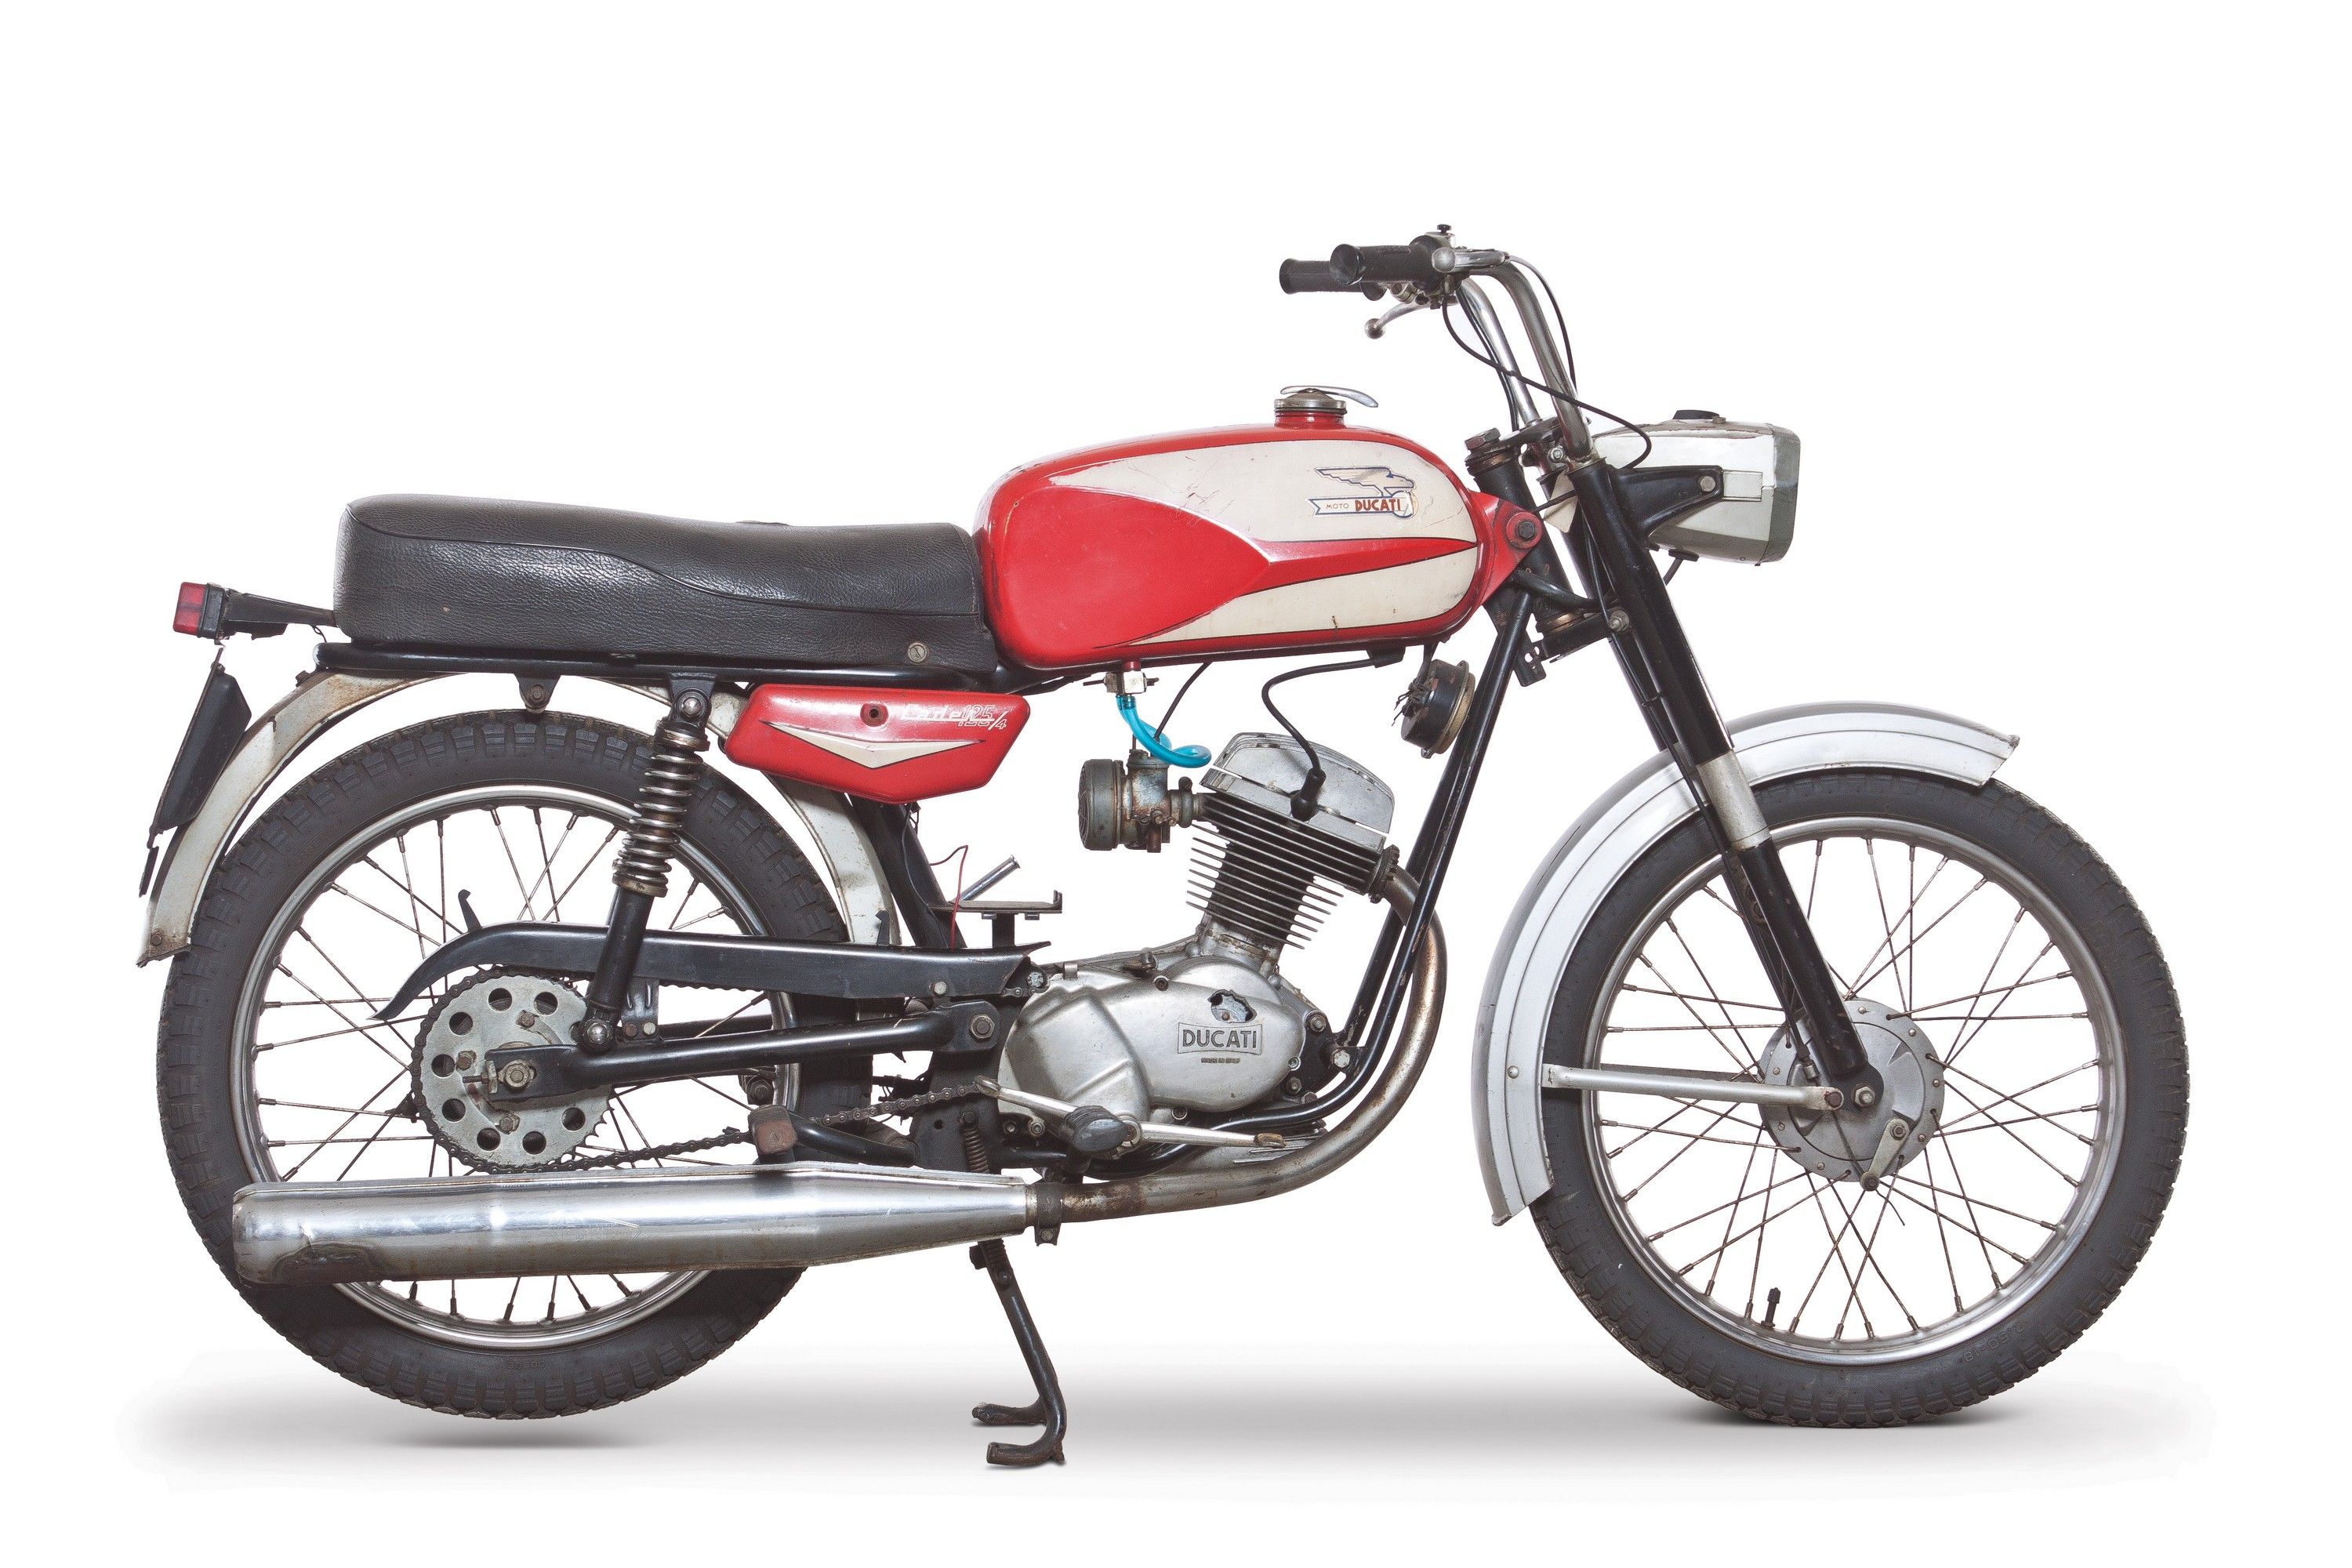 1967 Ducati 125 Cadet / 4